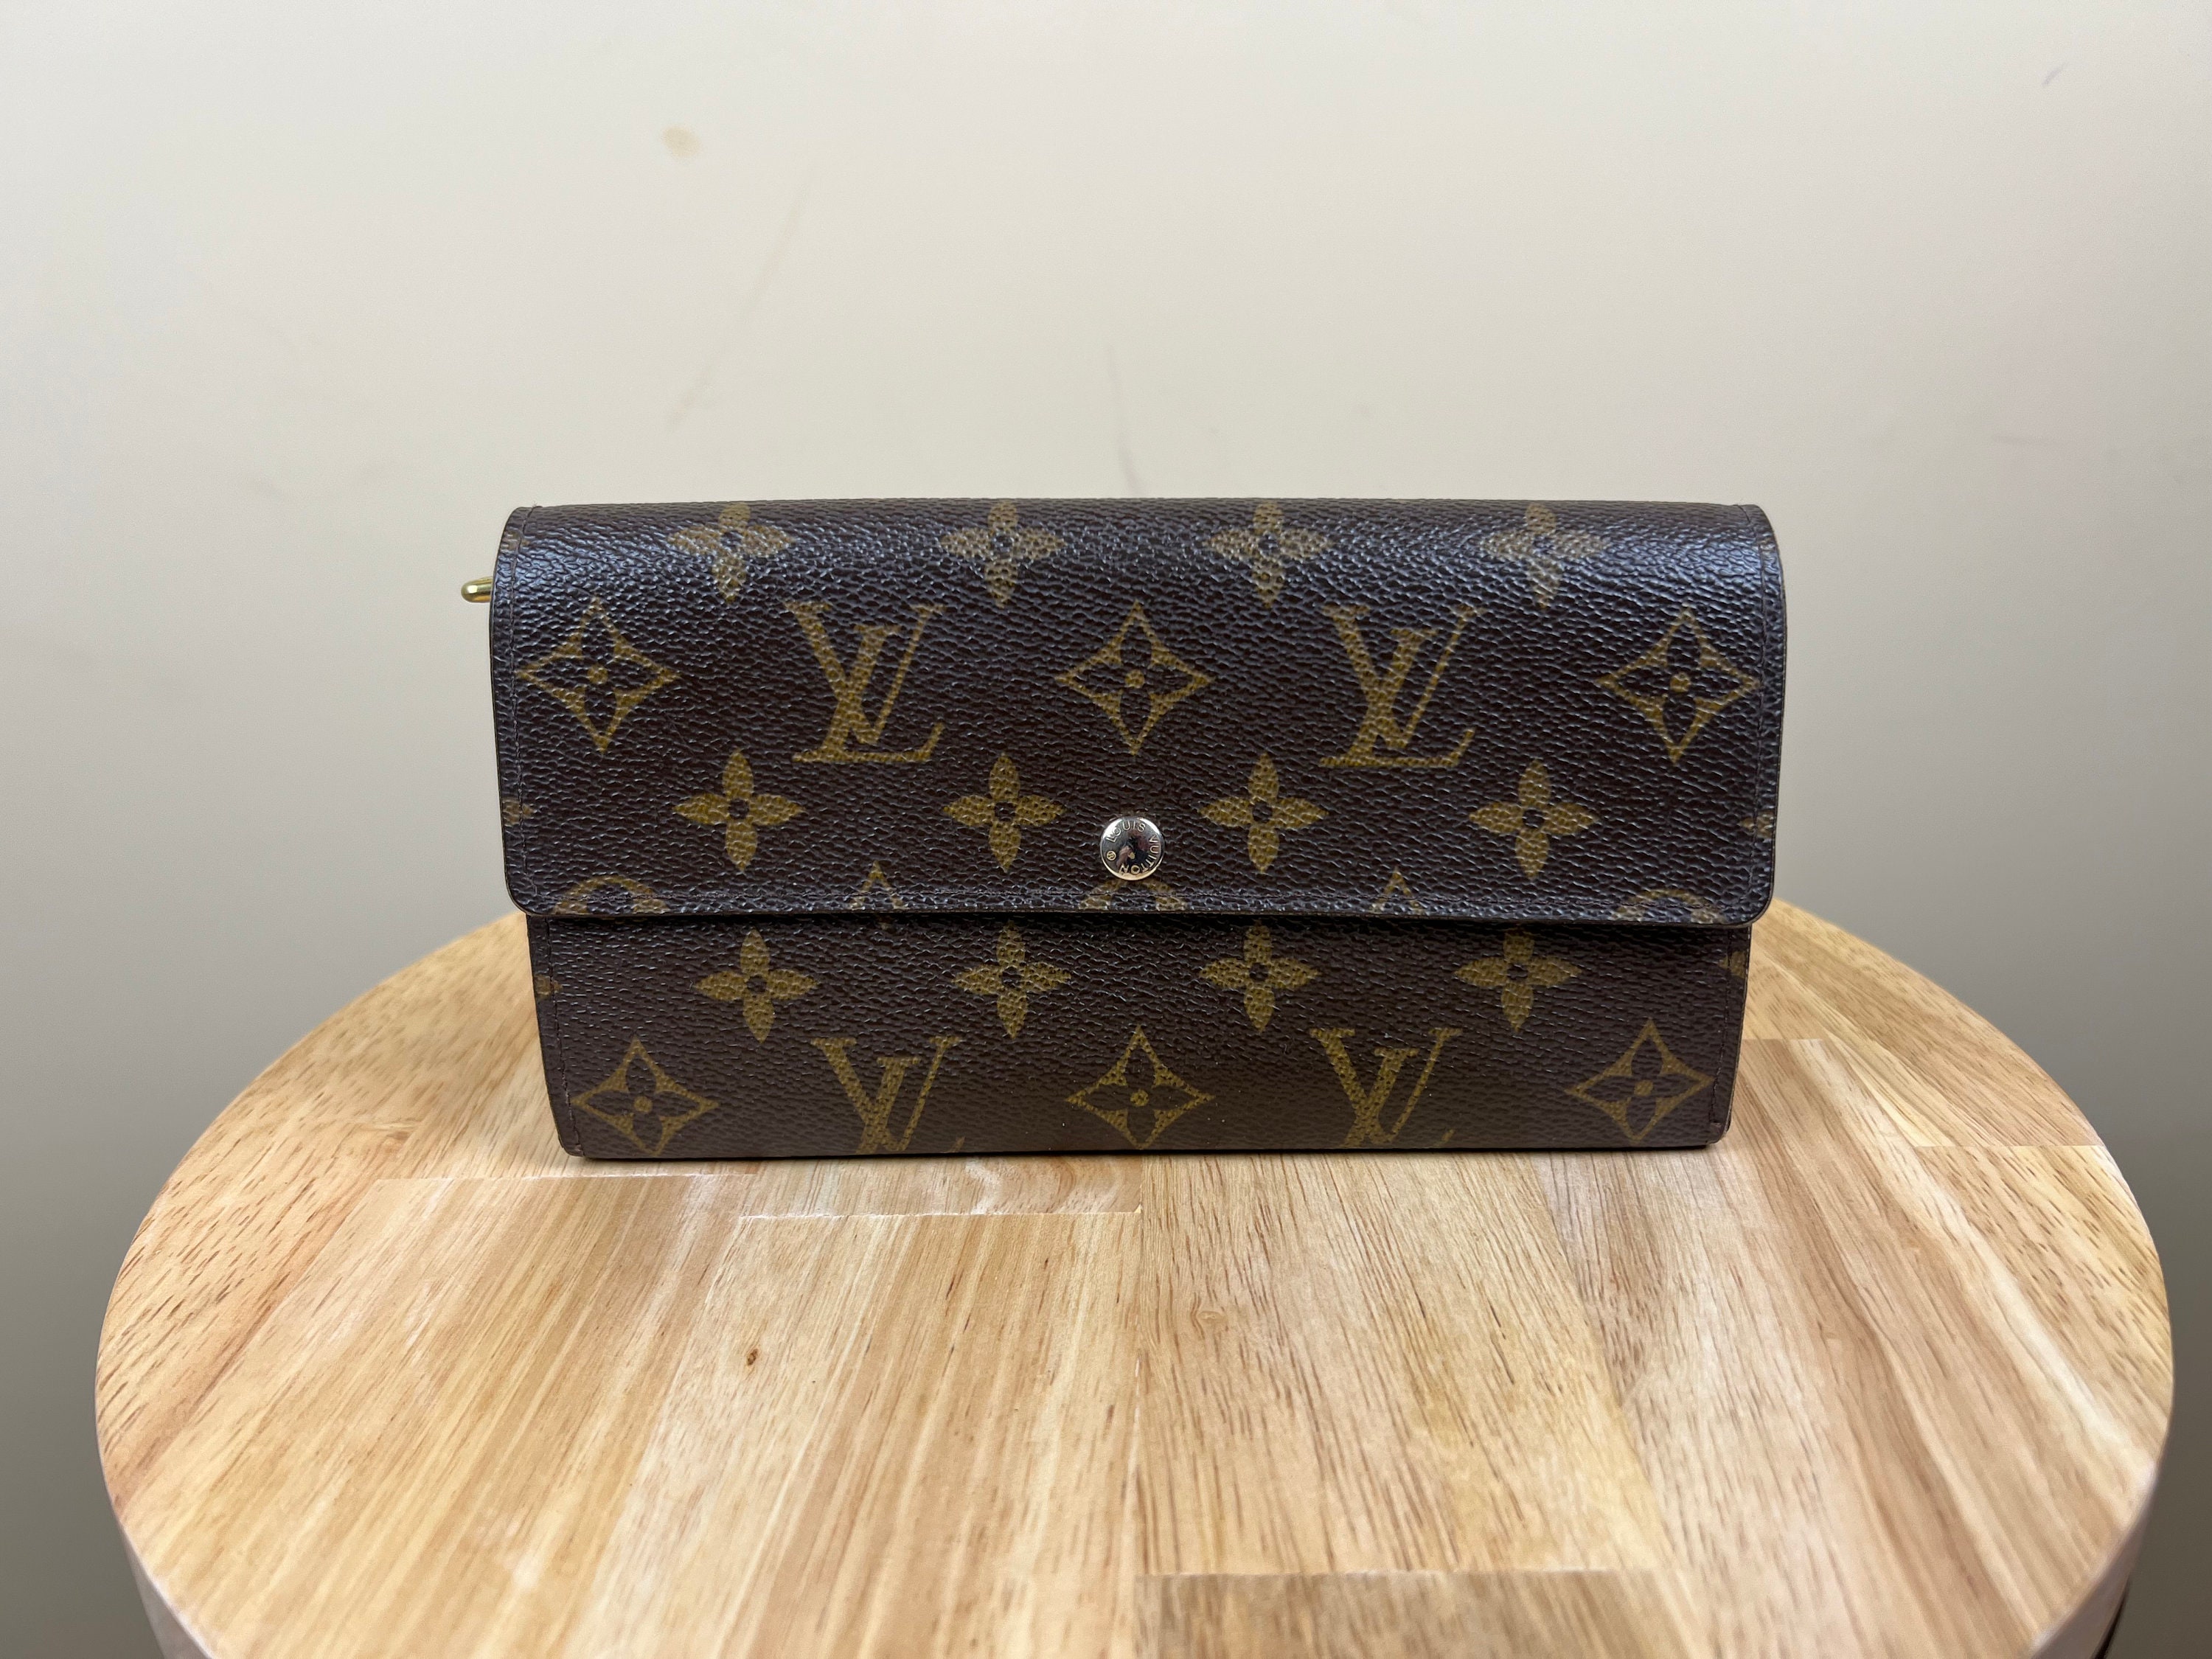 Louis Vuitton 2021 Damier Azur Pochette Accessories - Neutrals Shoulder  Bags, Handbags - LOU530599